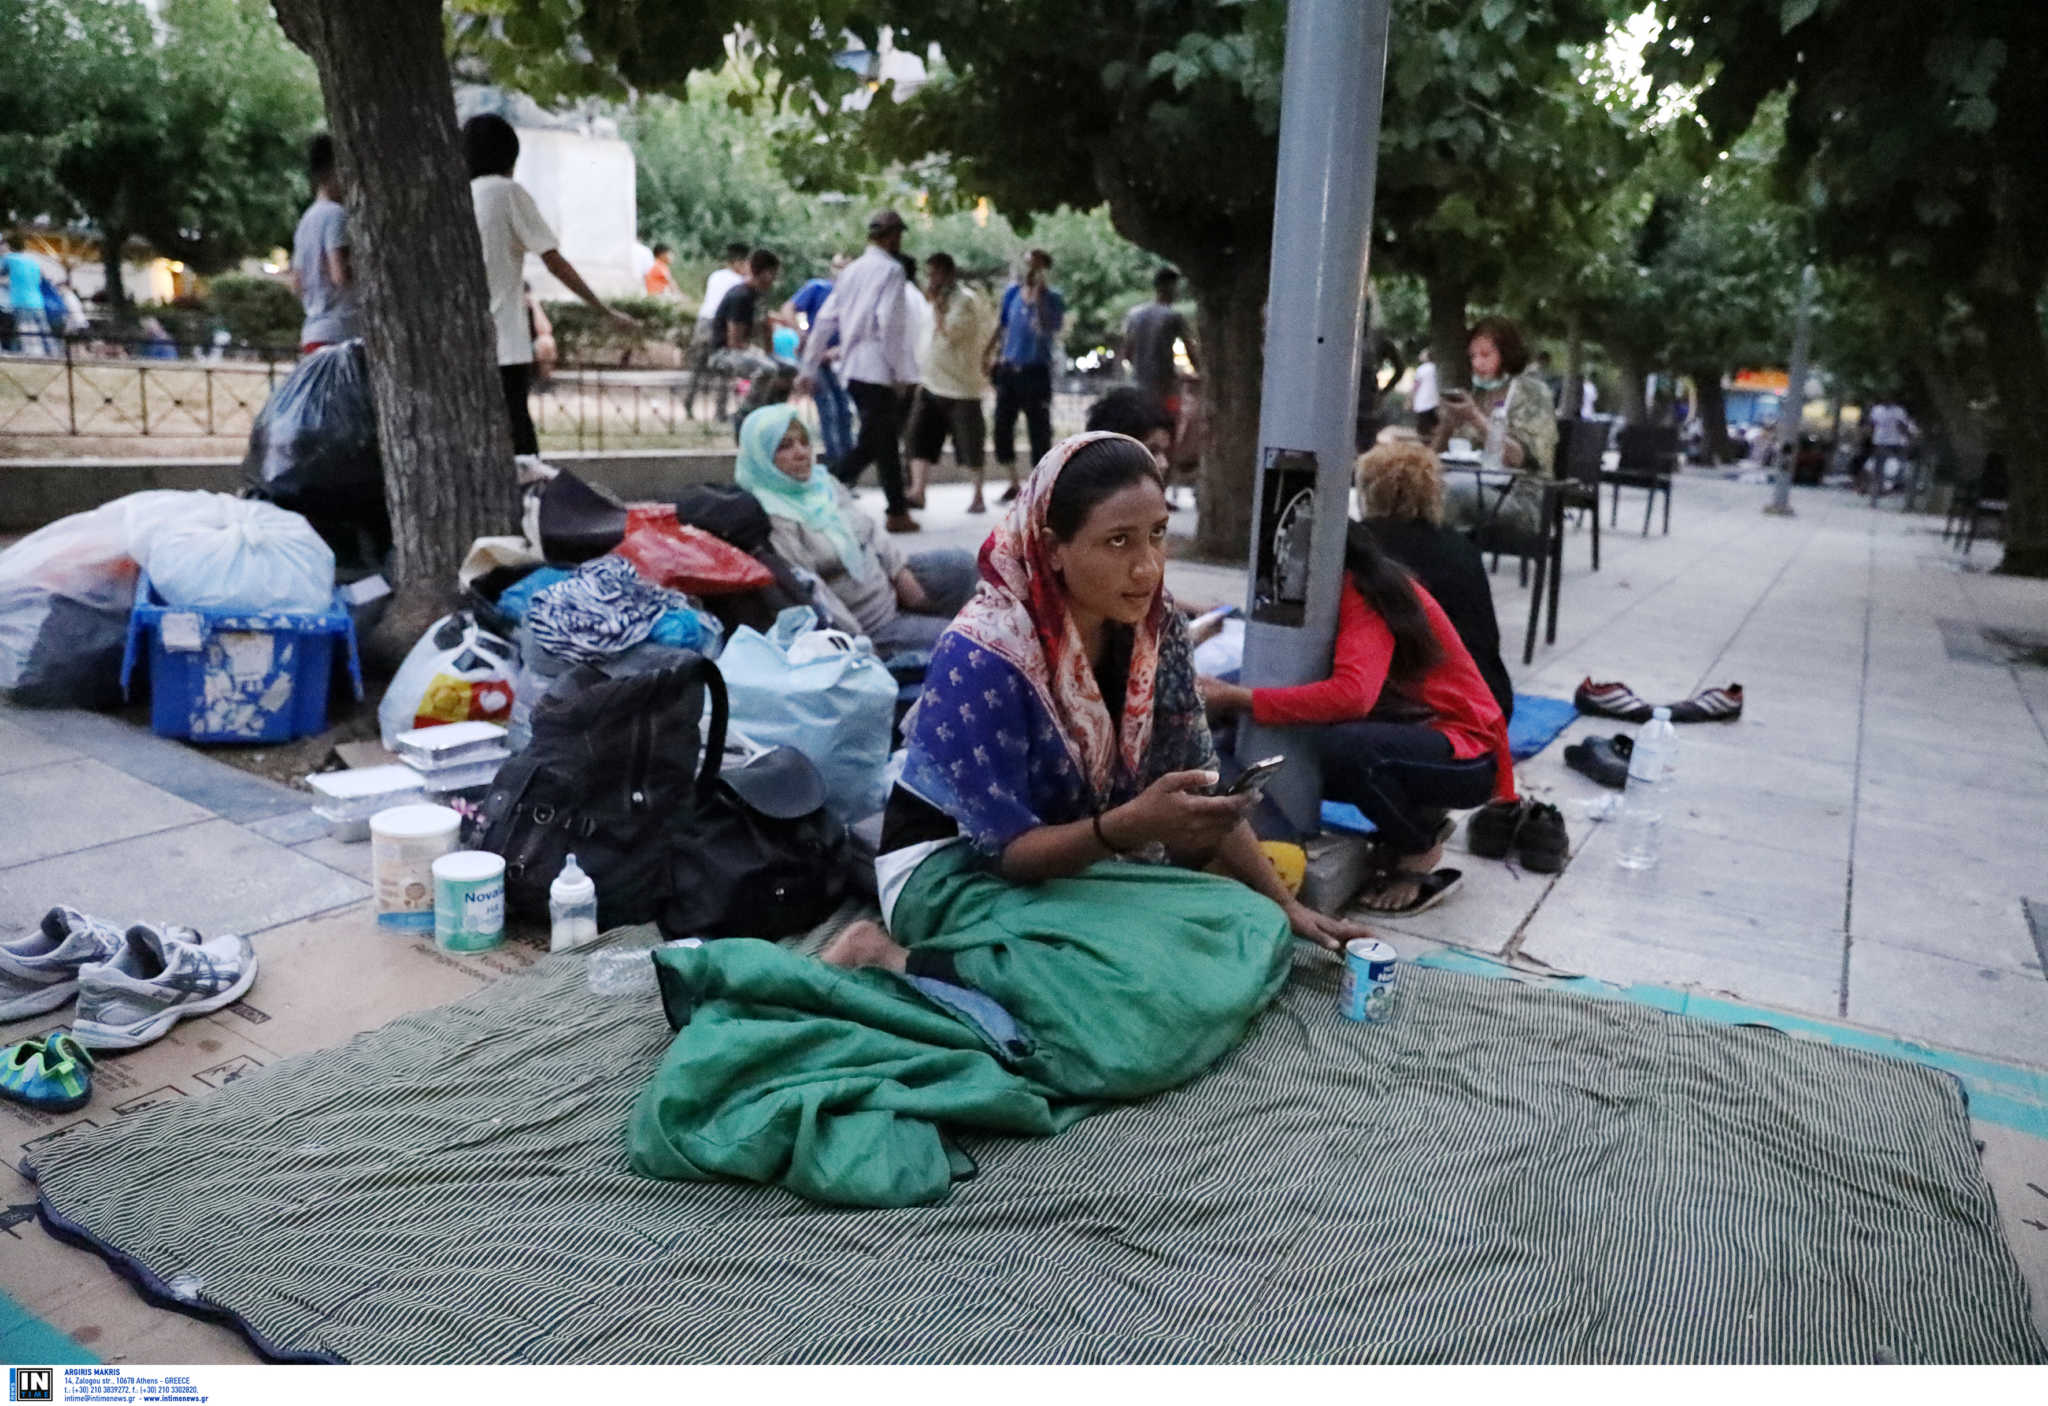 Ξεκινά πρόγραμμα στέγασης για δύο μήνες για να μην συνωστίζονται οι αλλοδαποί όπως στην Πλατεία Βικτωρίας